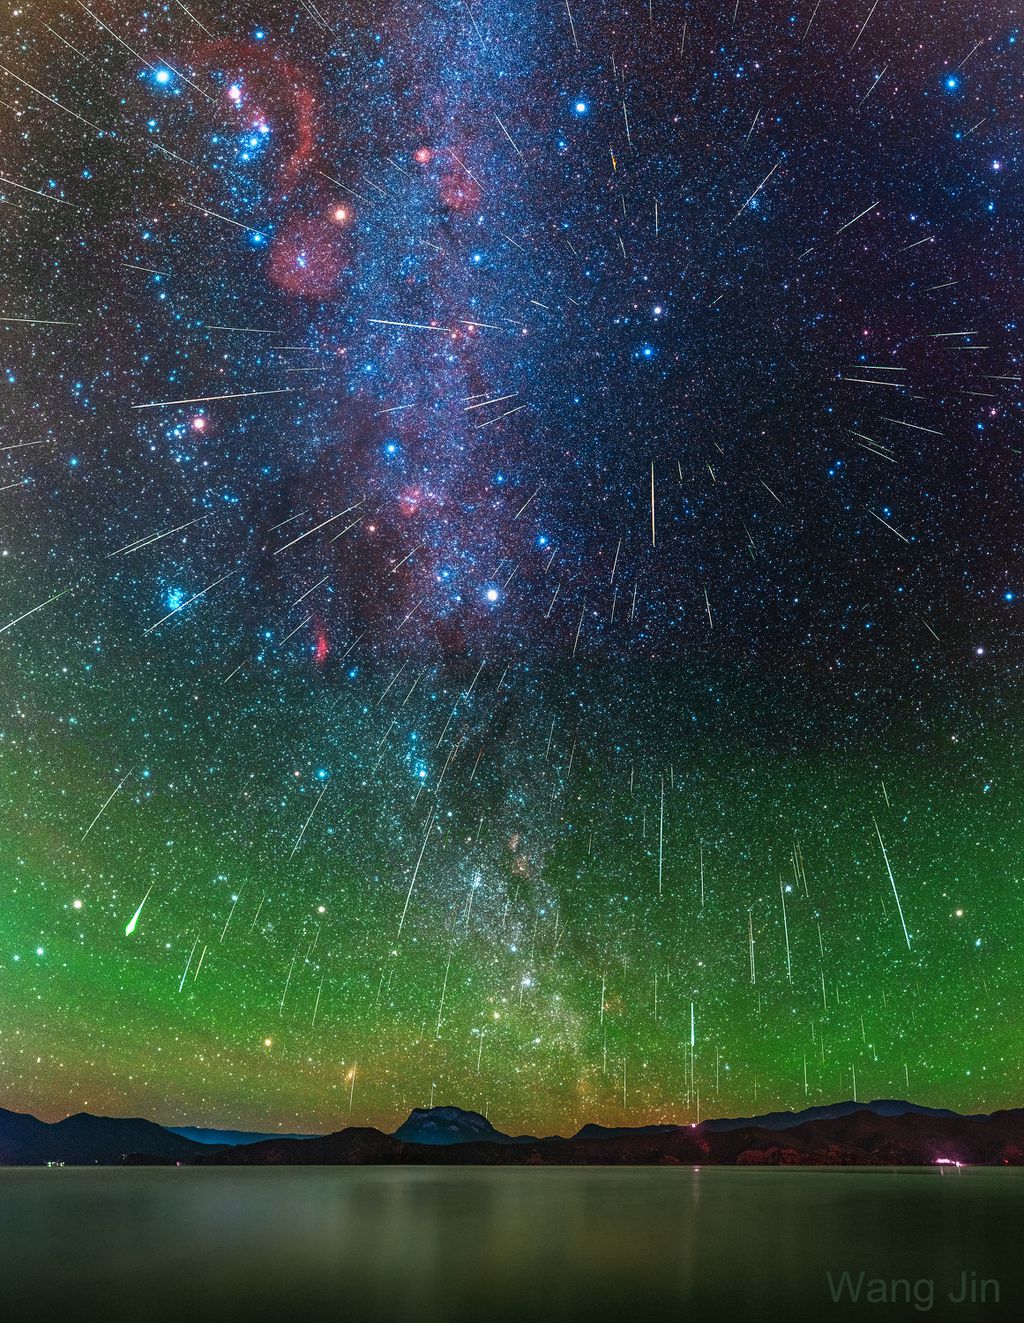 Durante a chuva de meteoros Geminídeas, é possível observar até 120 meteoros por hora (Imagem: Reprodução/Wang Jin)